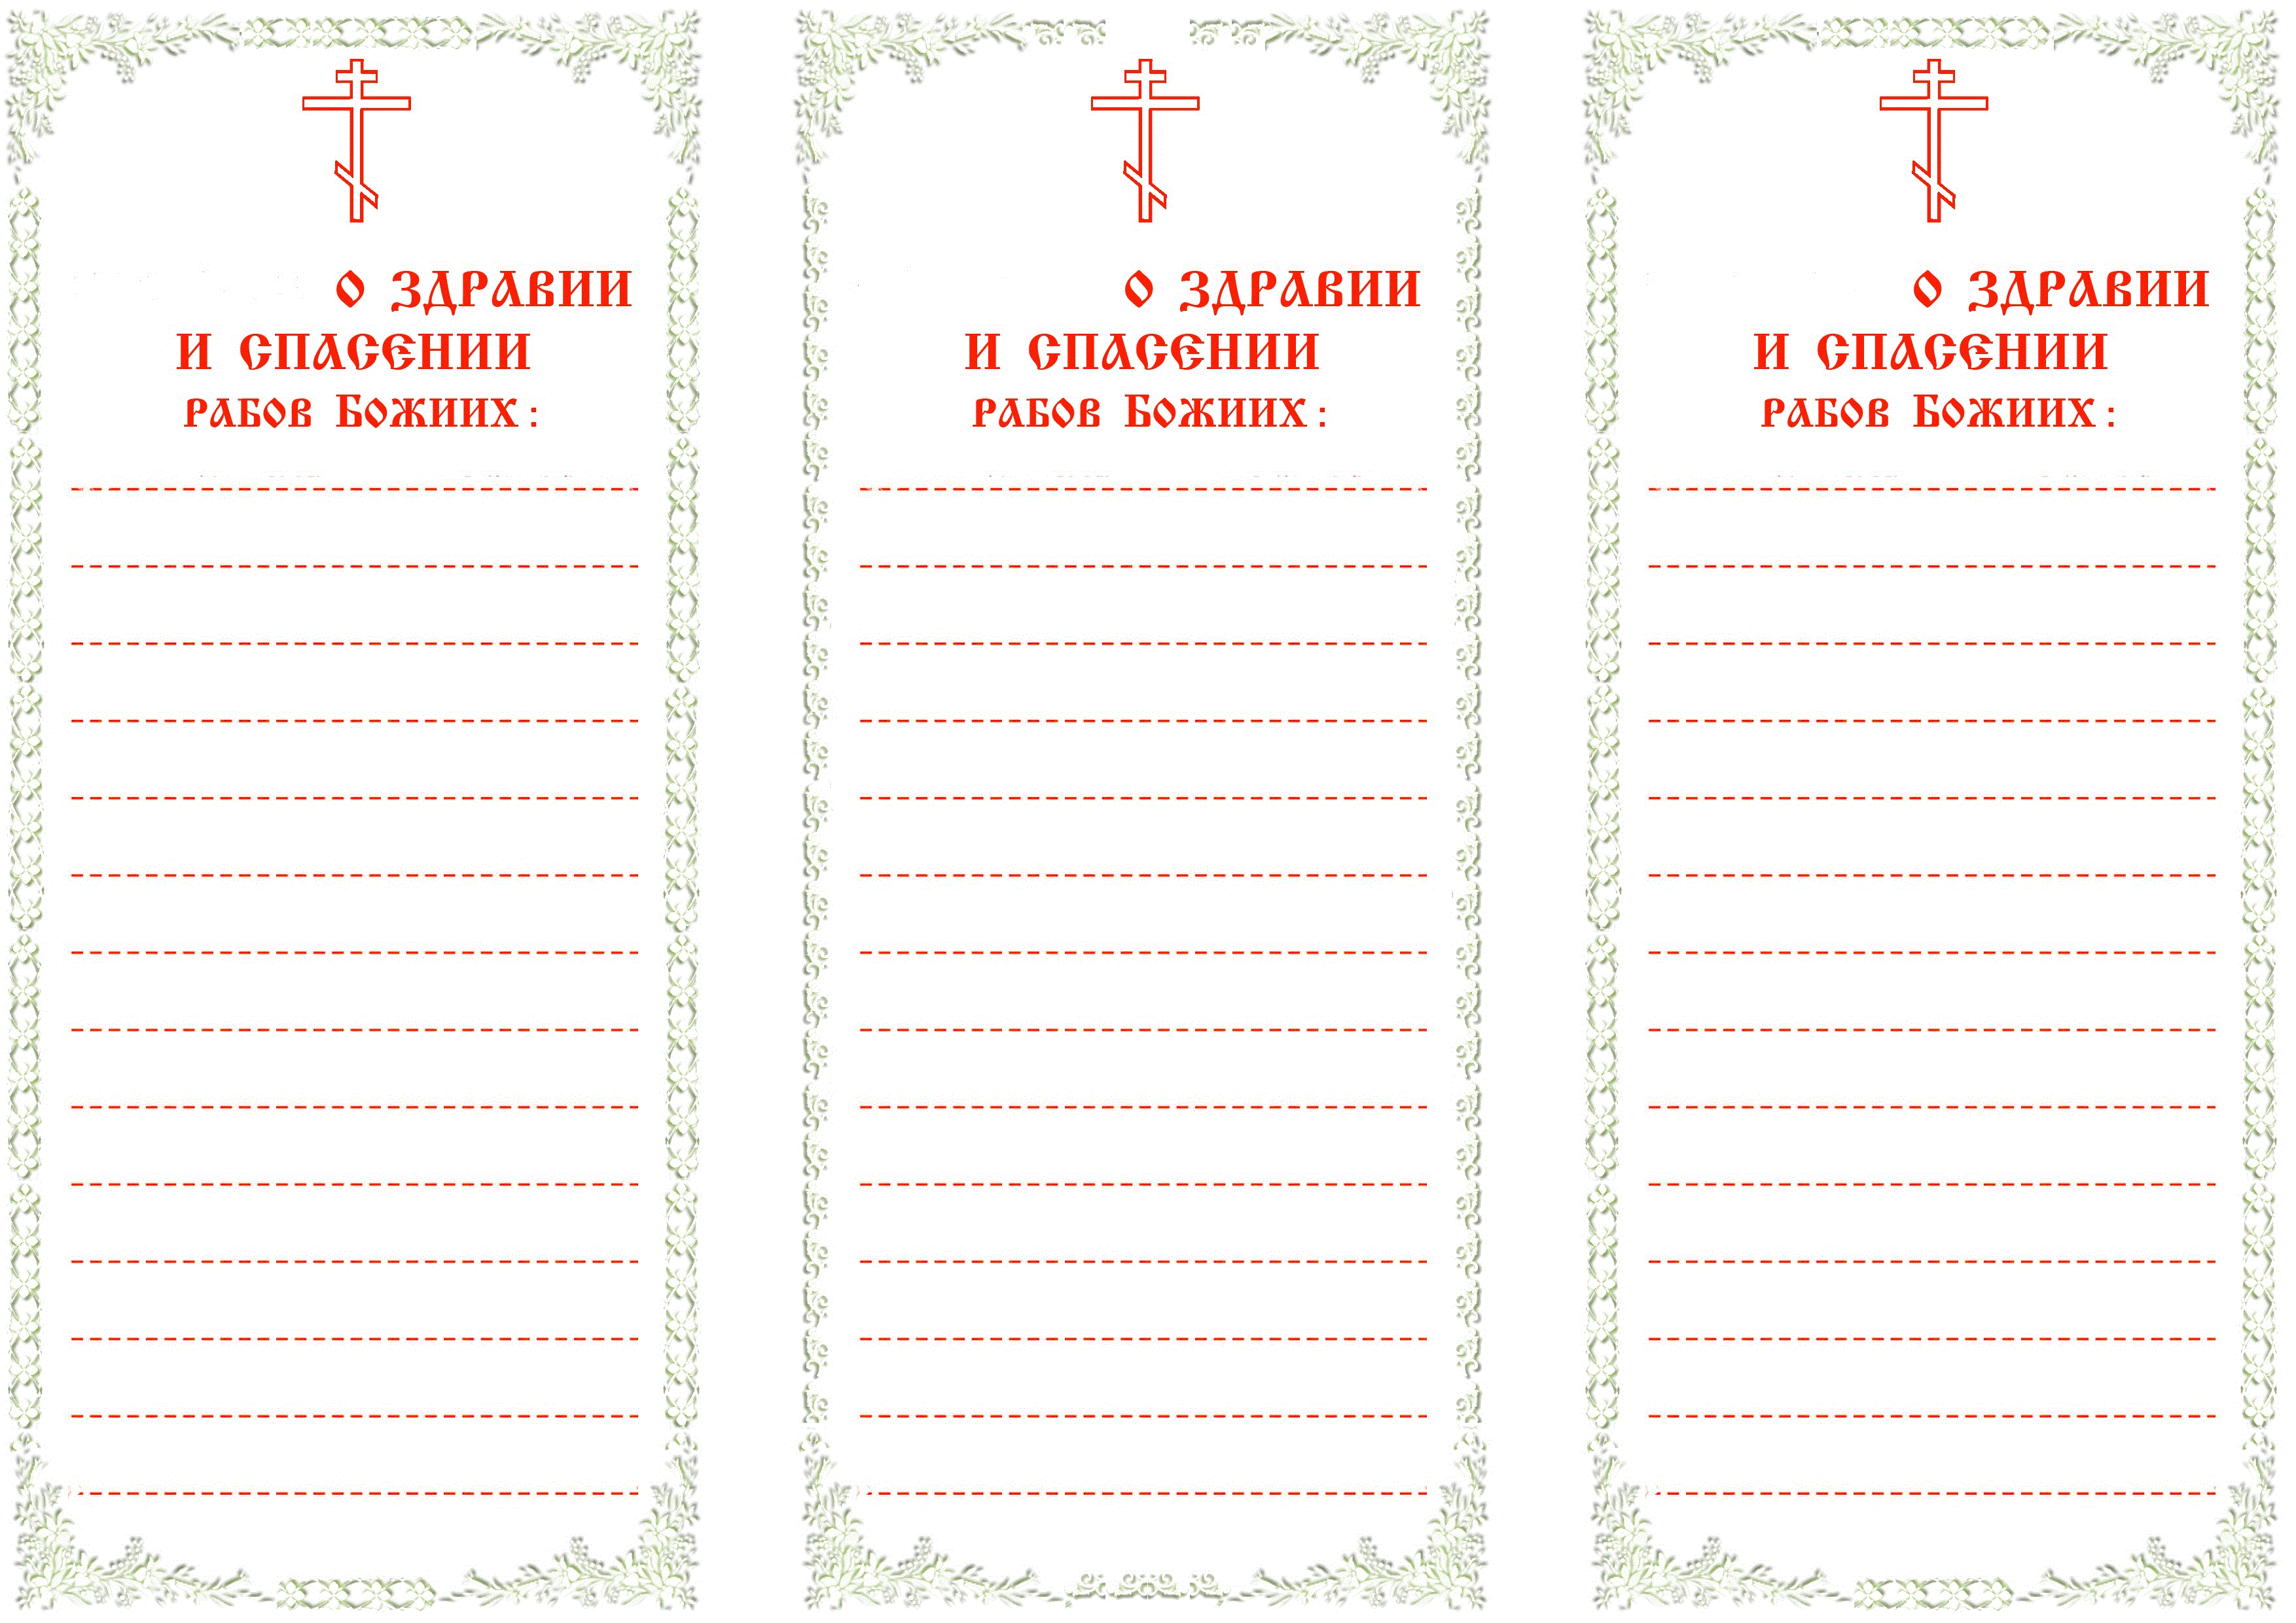 Православные традиции поминовения усопших и заупокойные молебны в 2022 году